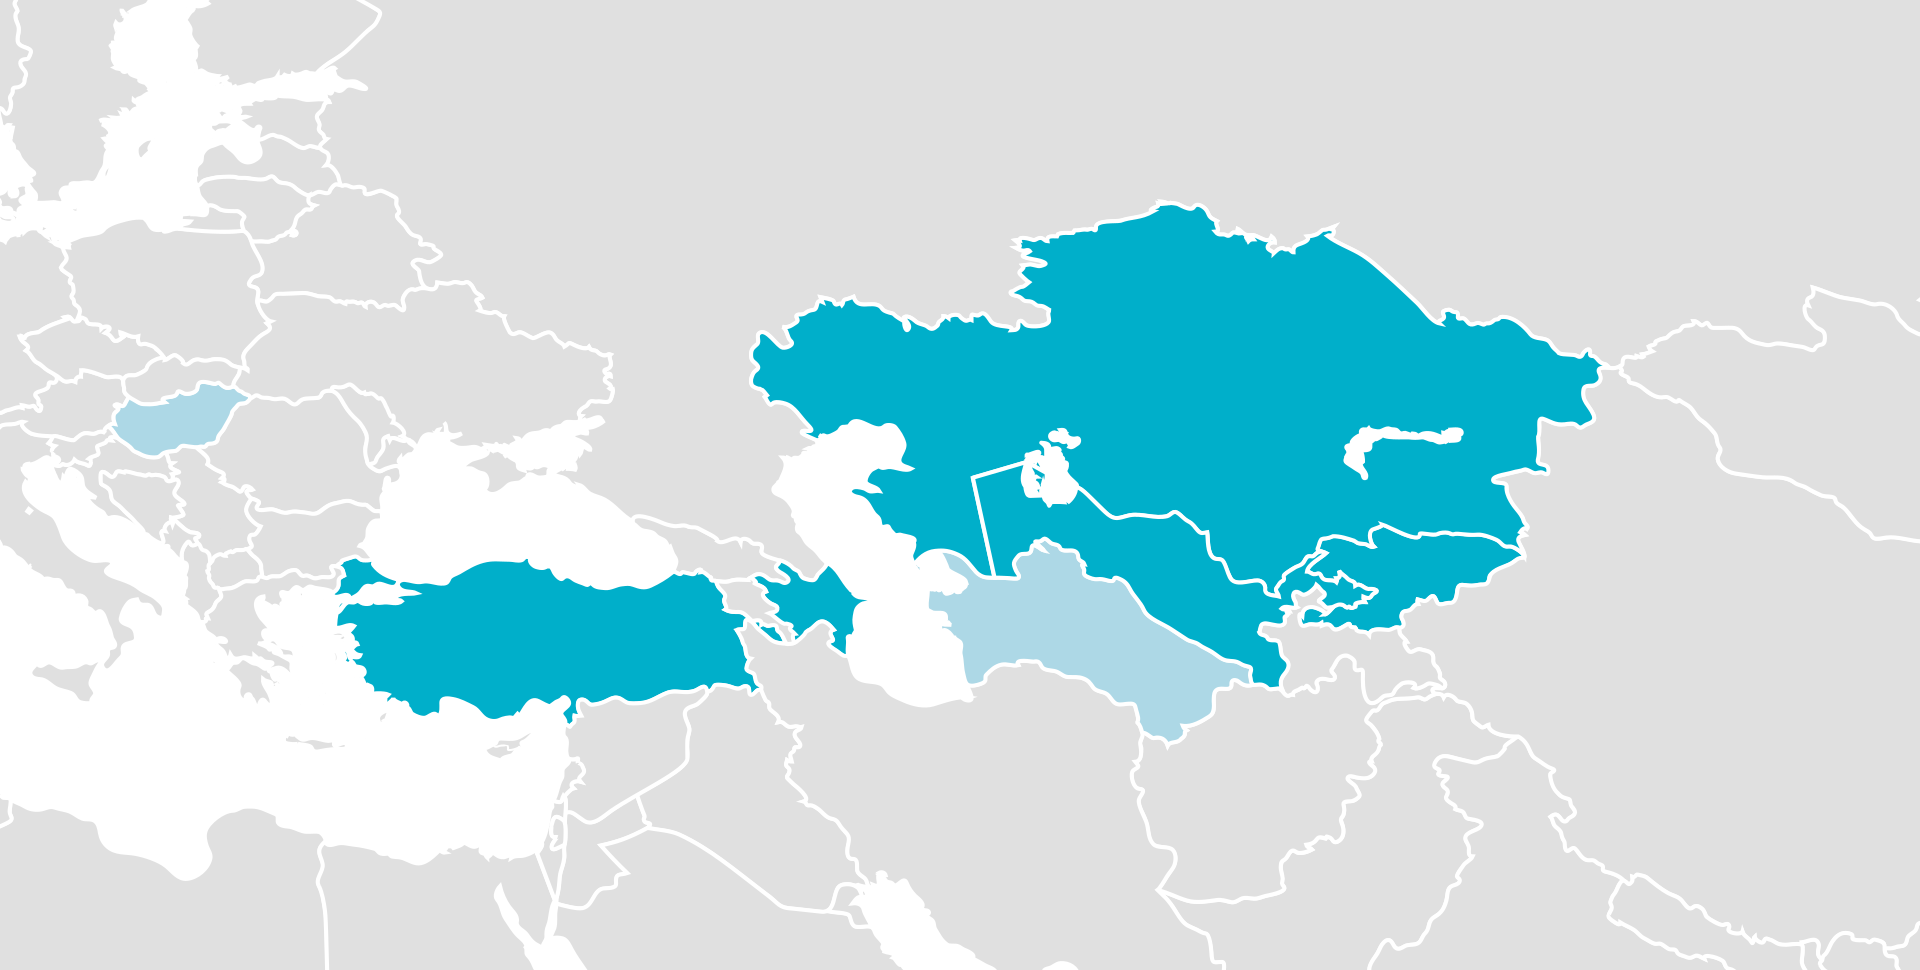 ОТГ, Синим цветом отмечены государства-члены организации, а голубым — её наблюдатели